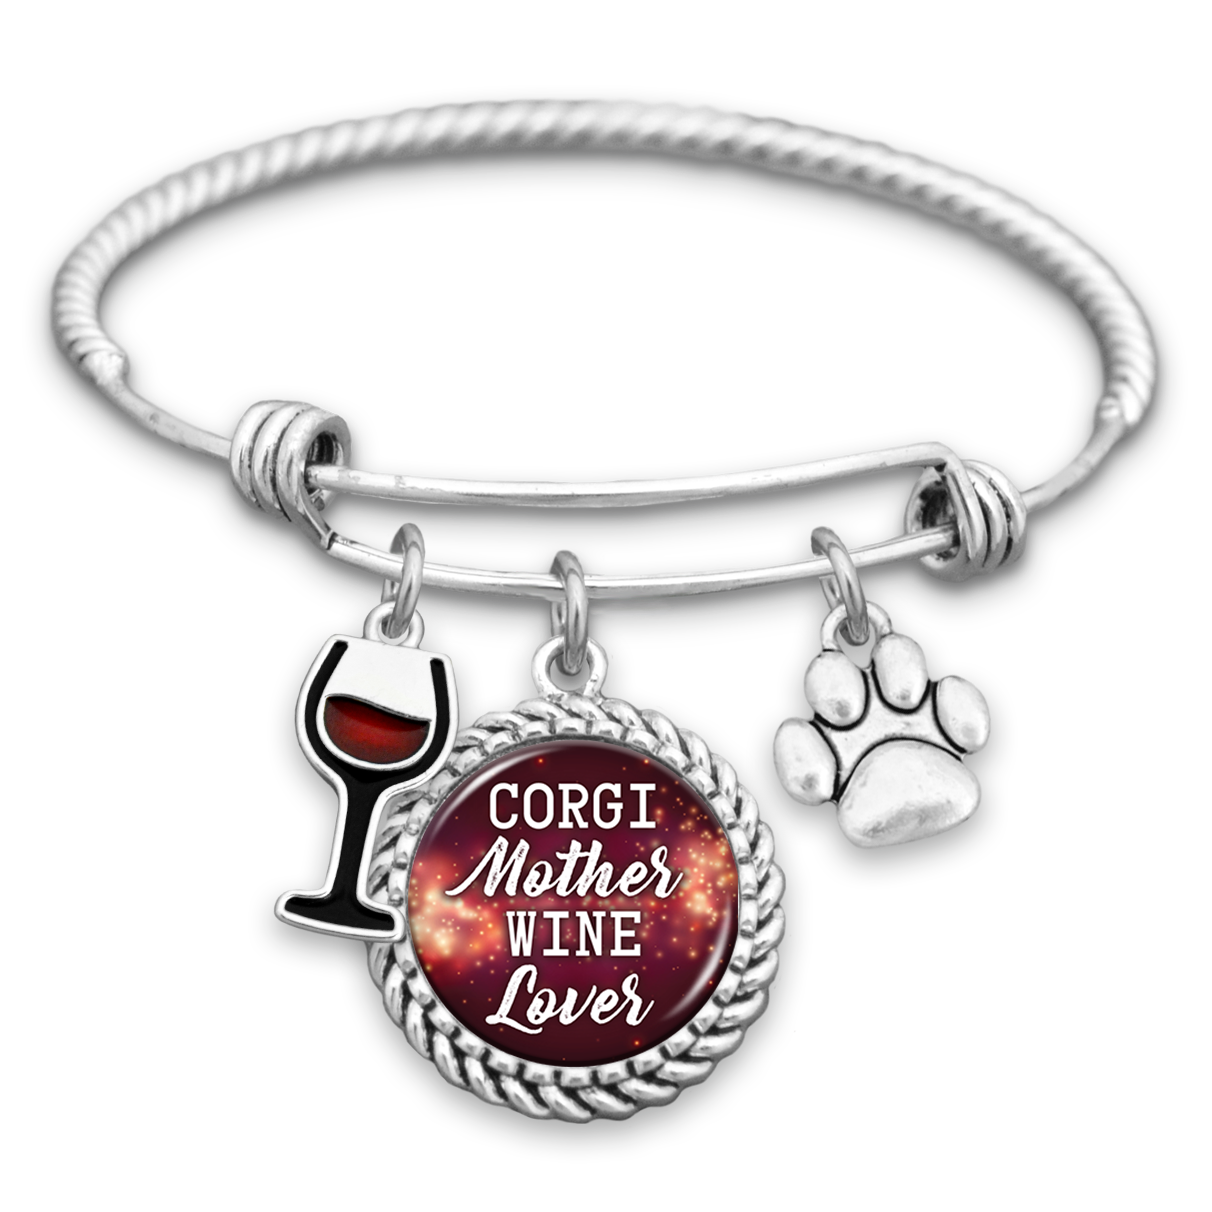 Corgi Mother Wine Lover Charm Bracelet